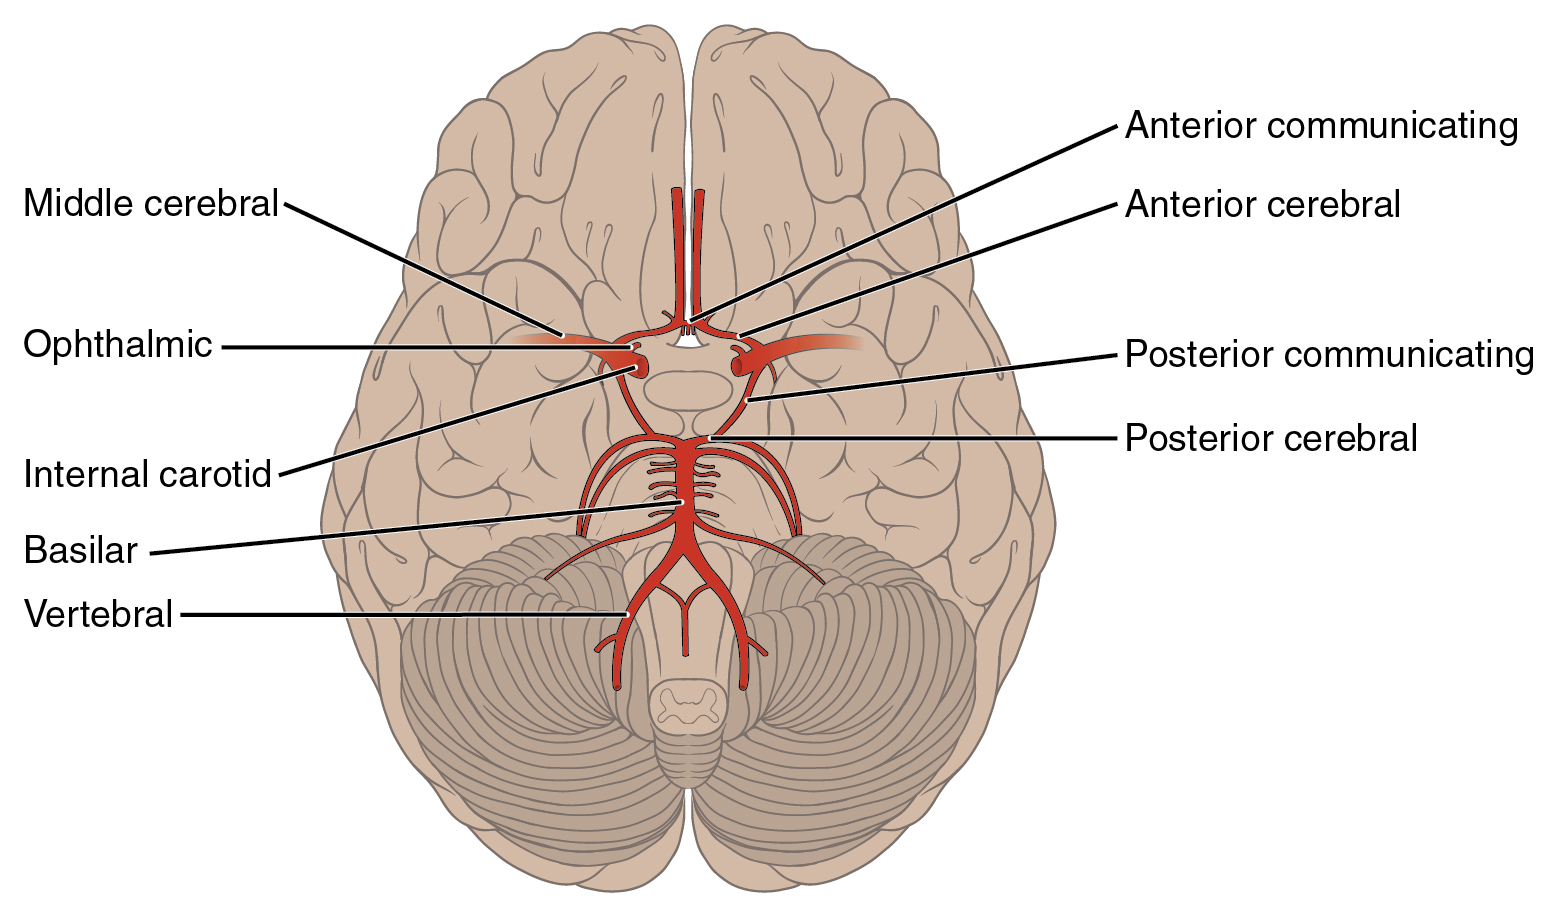 https://www.joeniekrofoundation.com/understanding/brain-basics/attachment/2123_arteries_of_the_brain/